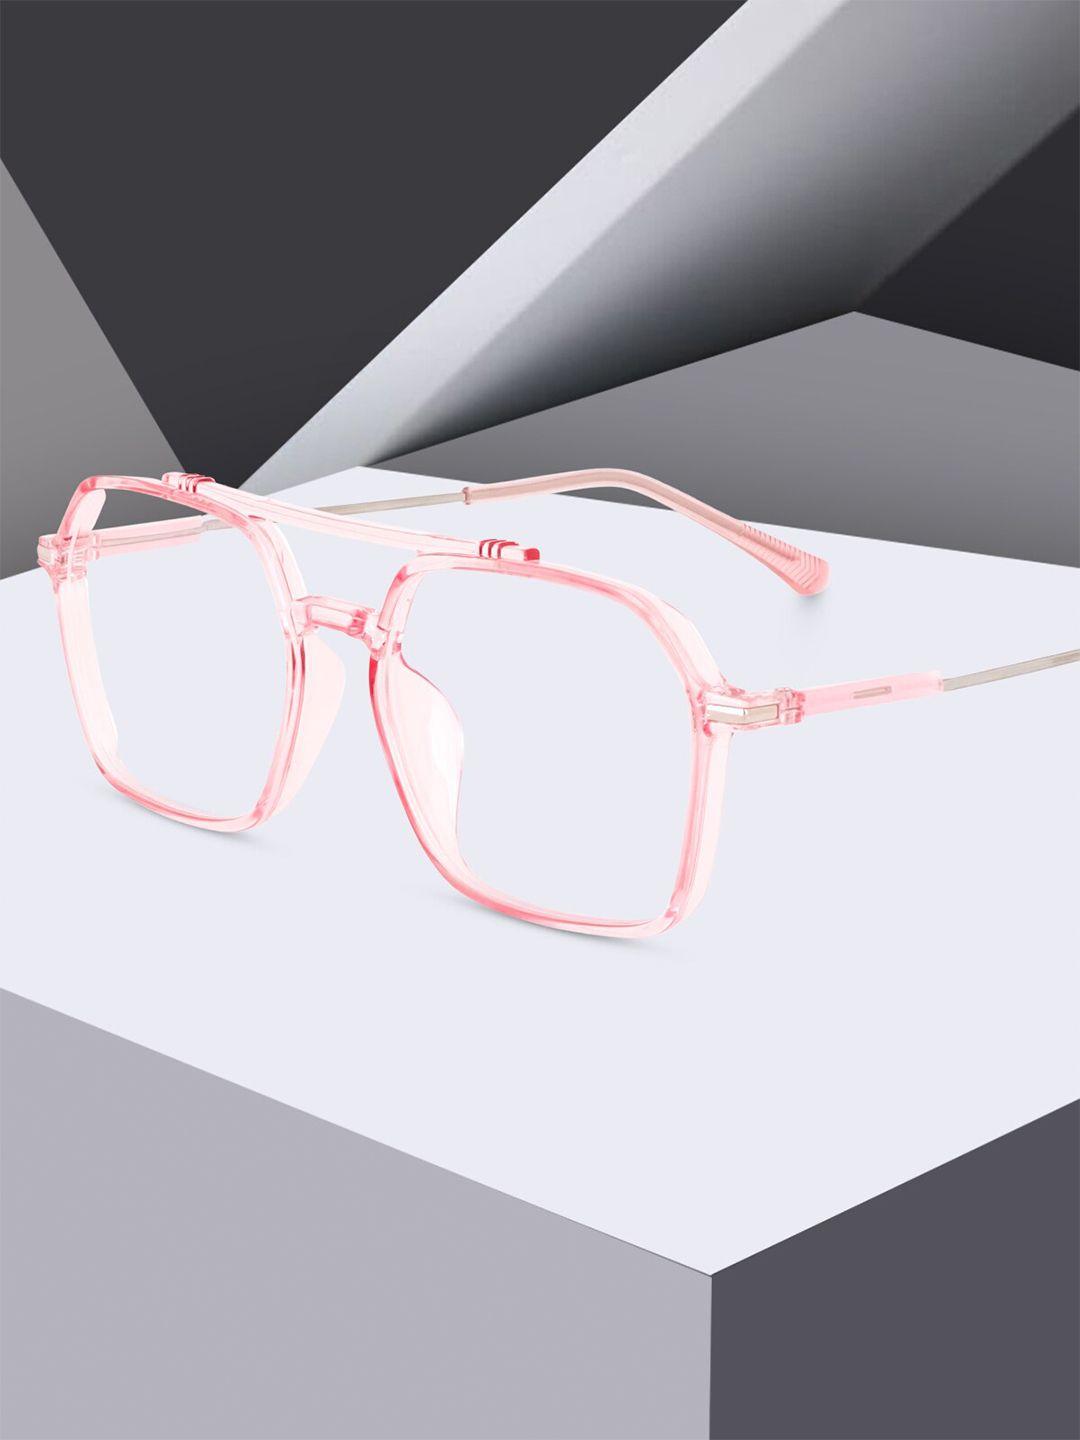 peter jones eyewear unisex pink rimless square frames